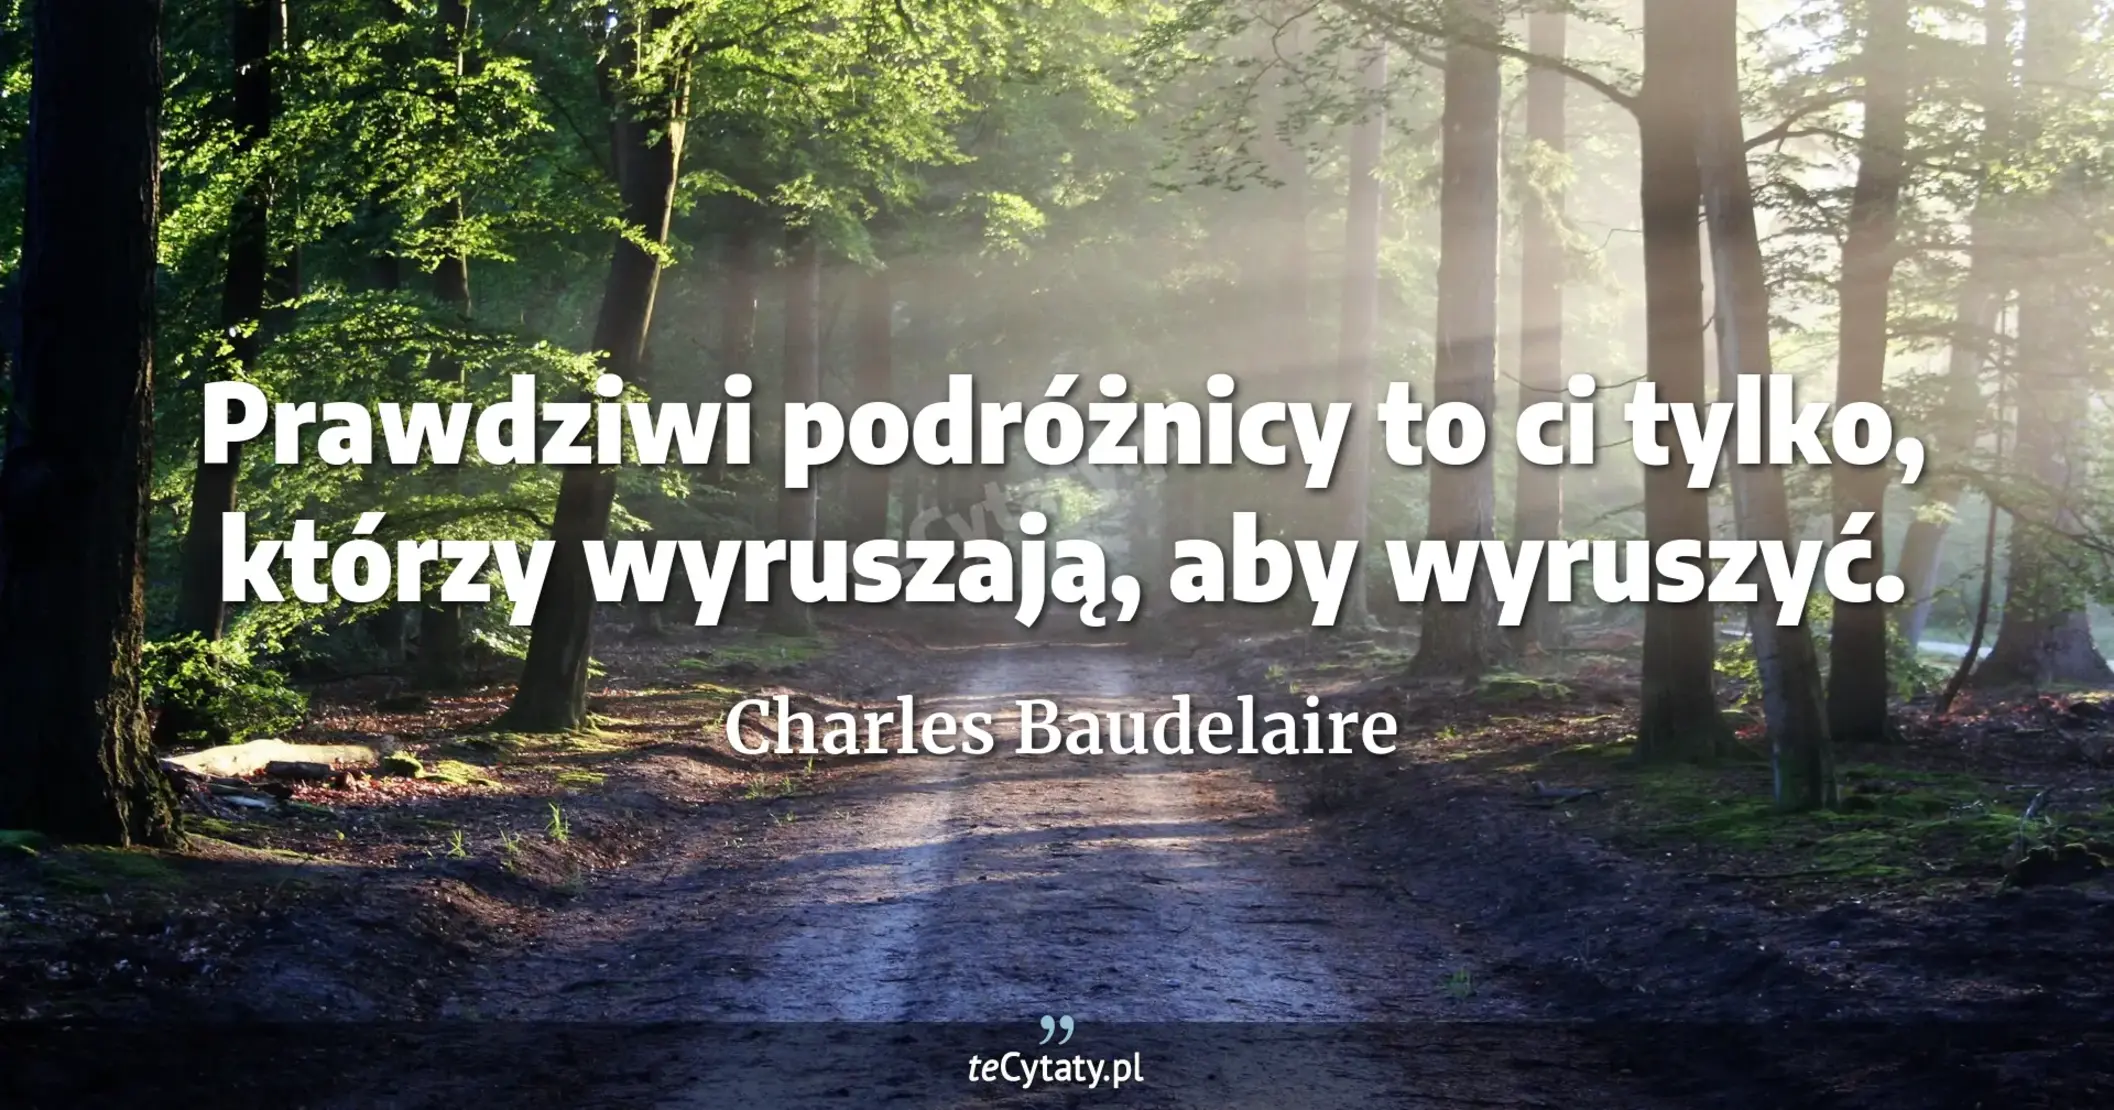 Prawdziwi podróżnicy to ci tylko, którzy wyruszają, aby wyruszyć. - Charles Baudelaire